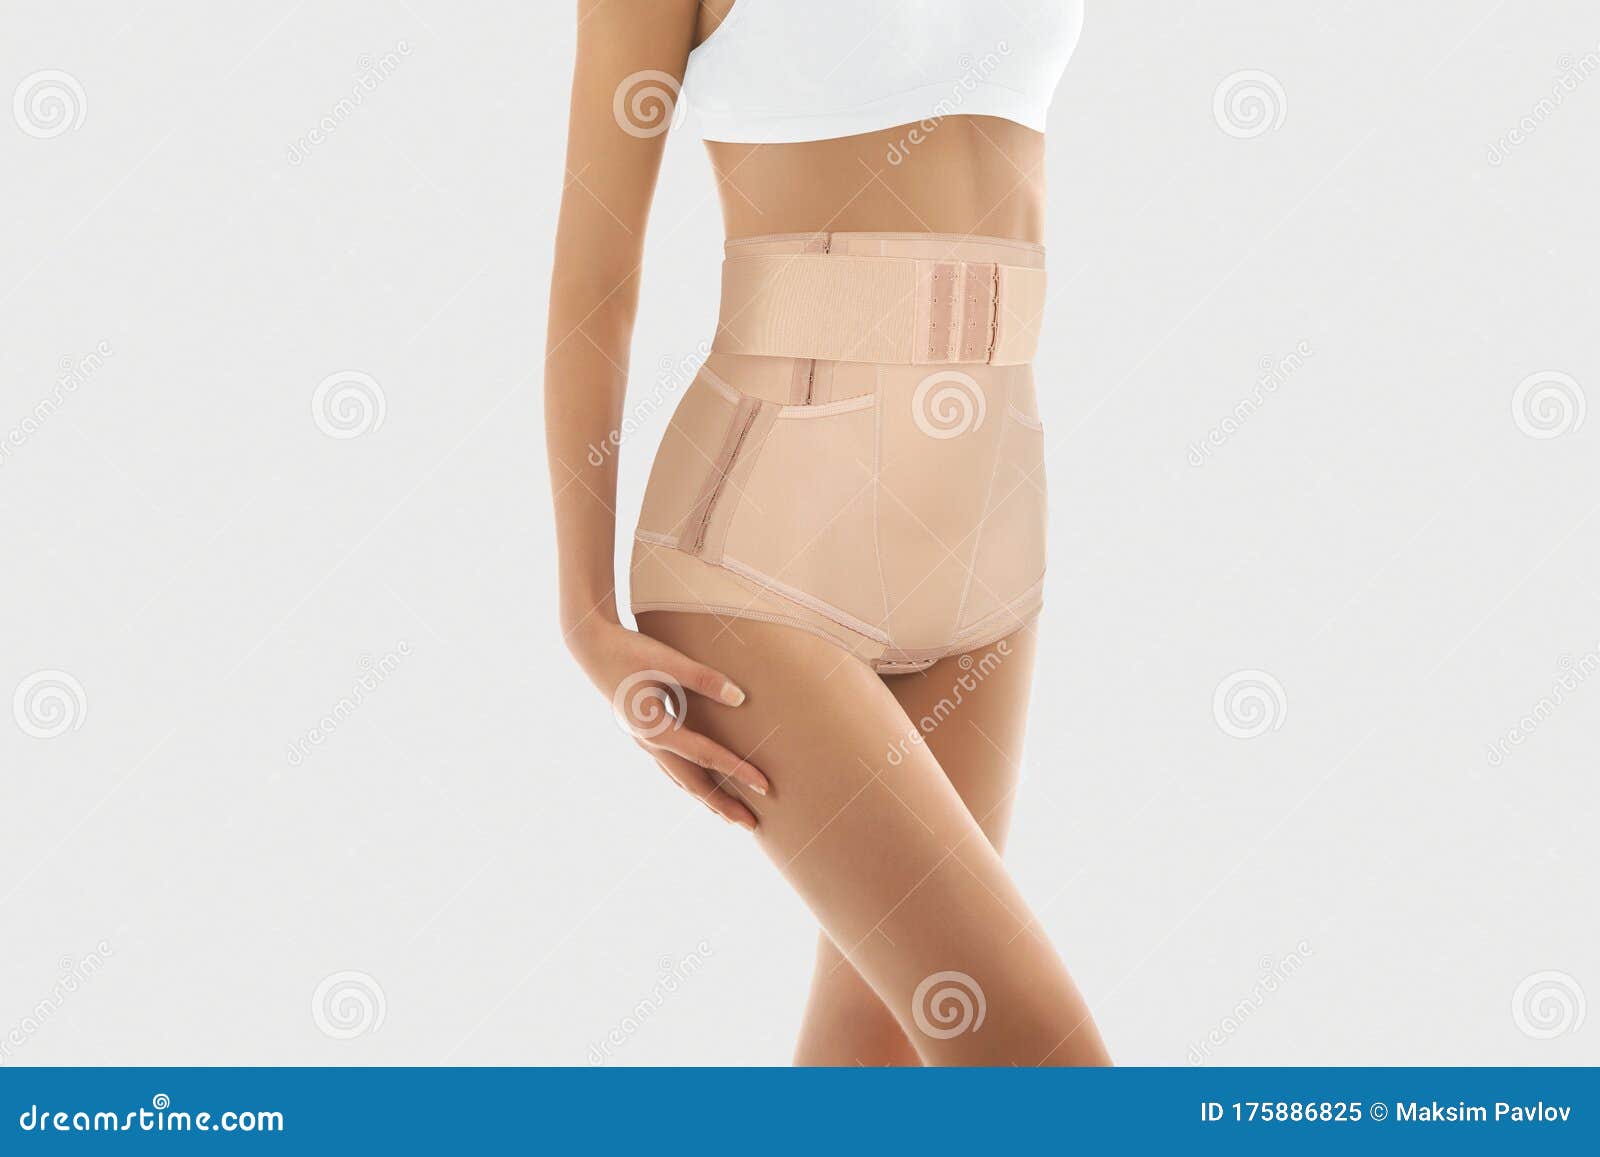 Postnatal Bandage. Medical Compression Underwear Stock Image